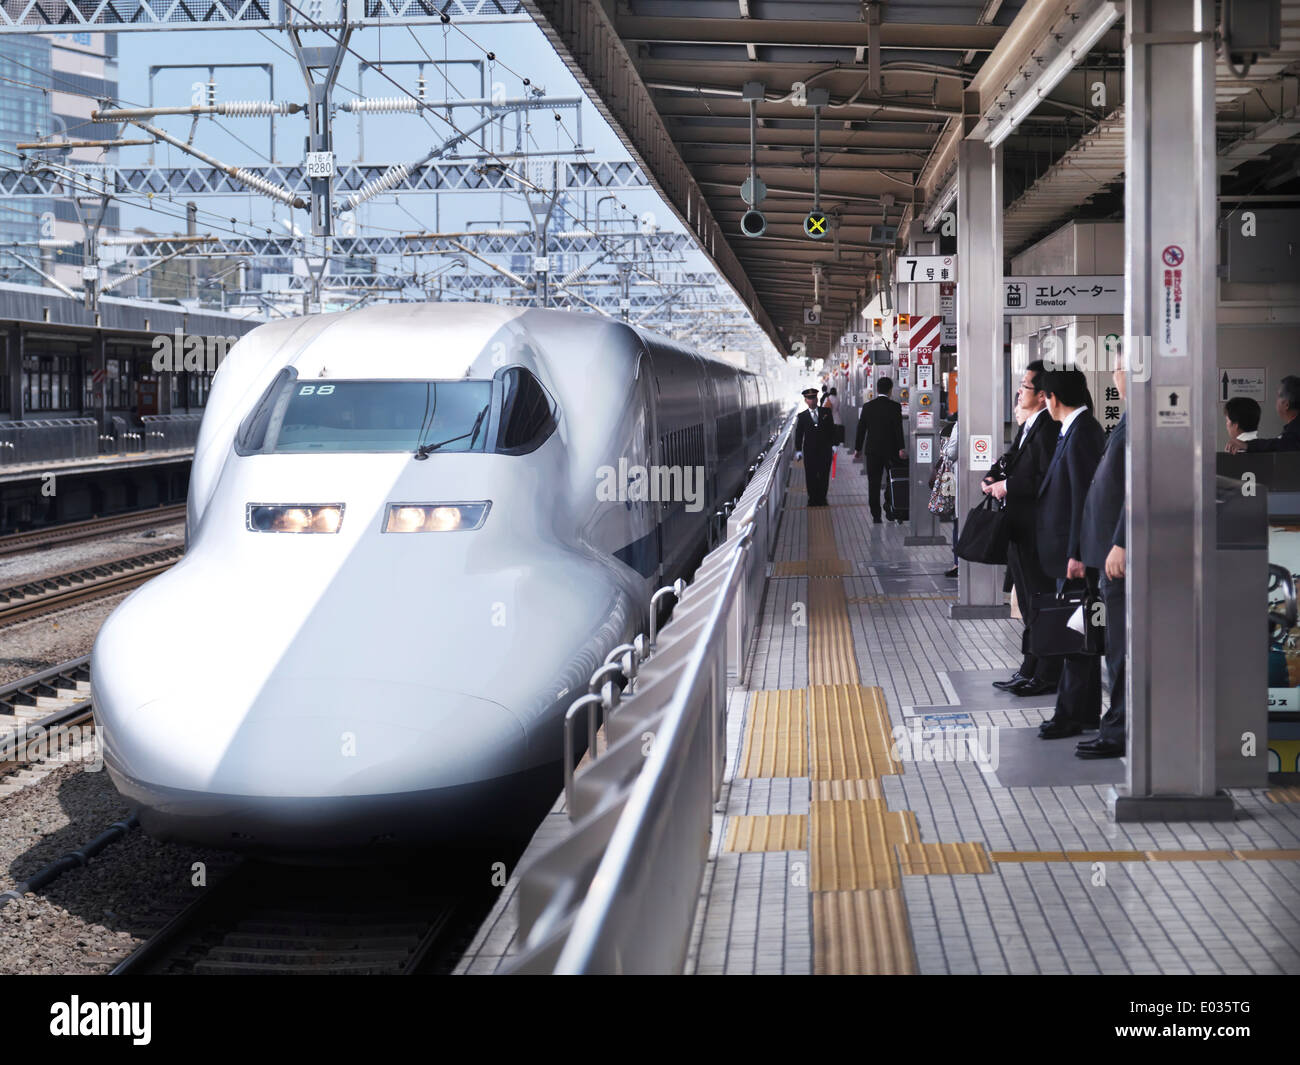 Führerschein verfügbar unter MaximImages.com - Shinkansen Hochgeschwindigkeitszug JR-700 Nozomi, Ankunft an einem Bahnsteig in Shizuoka, Japan Stockfoto